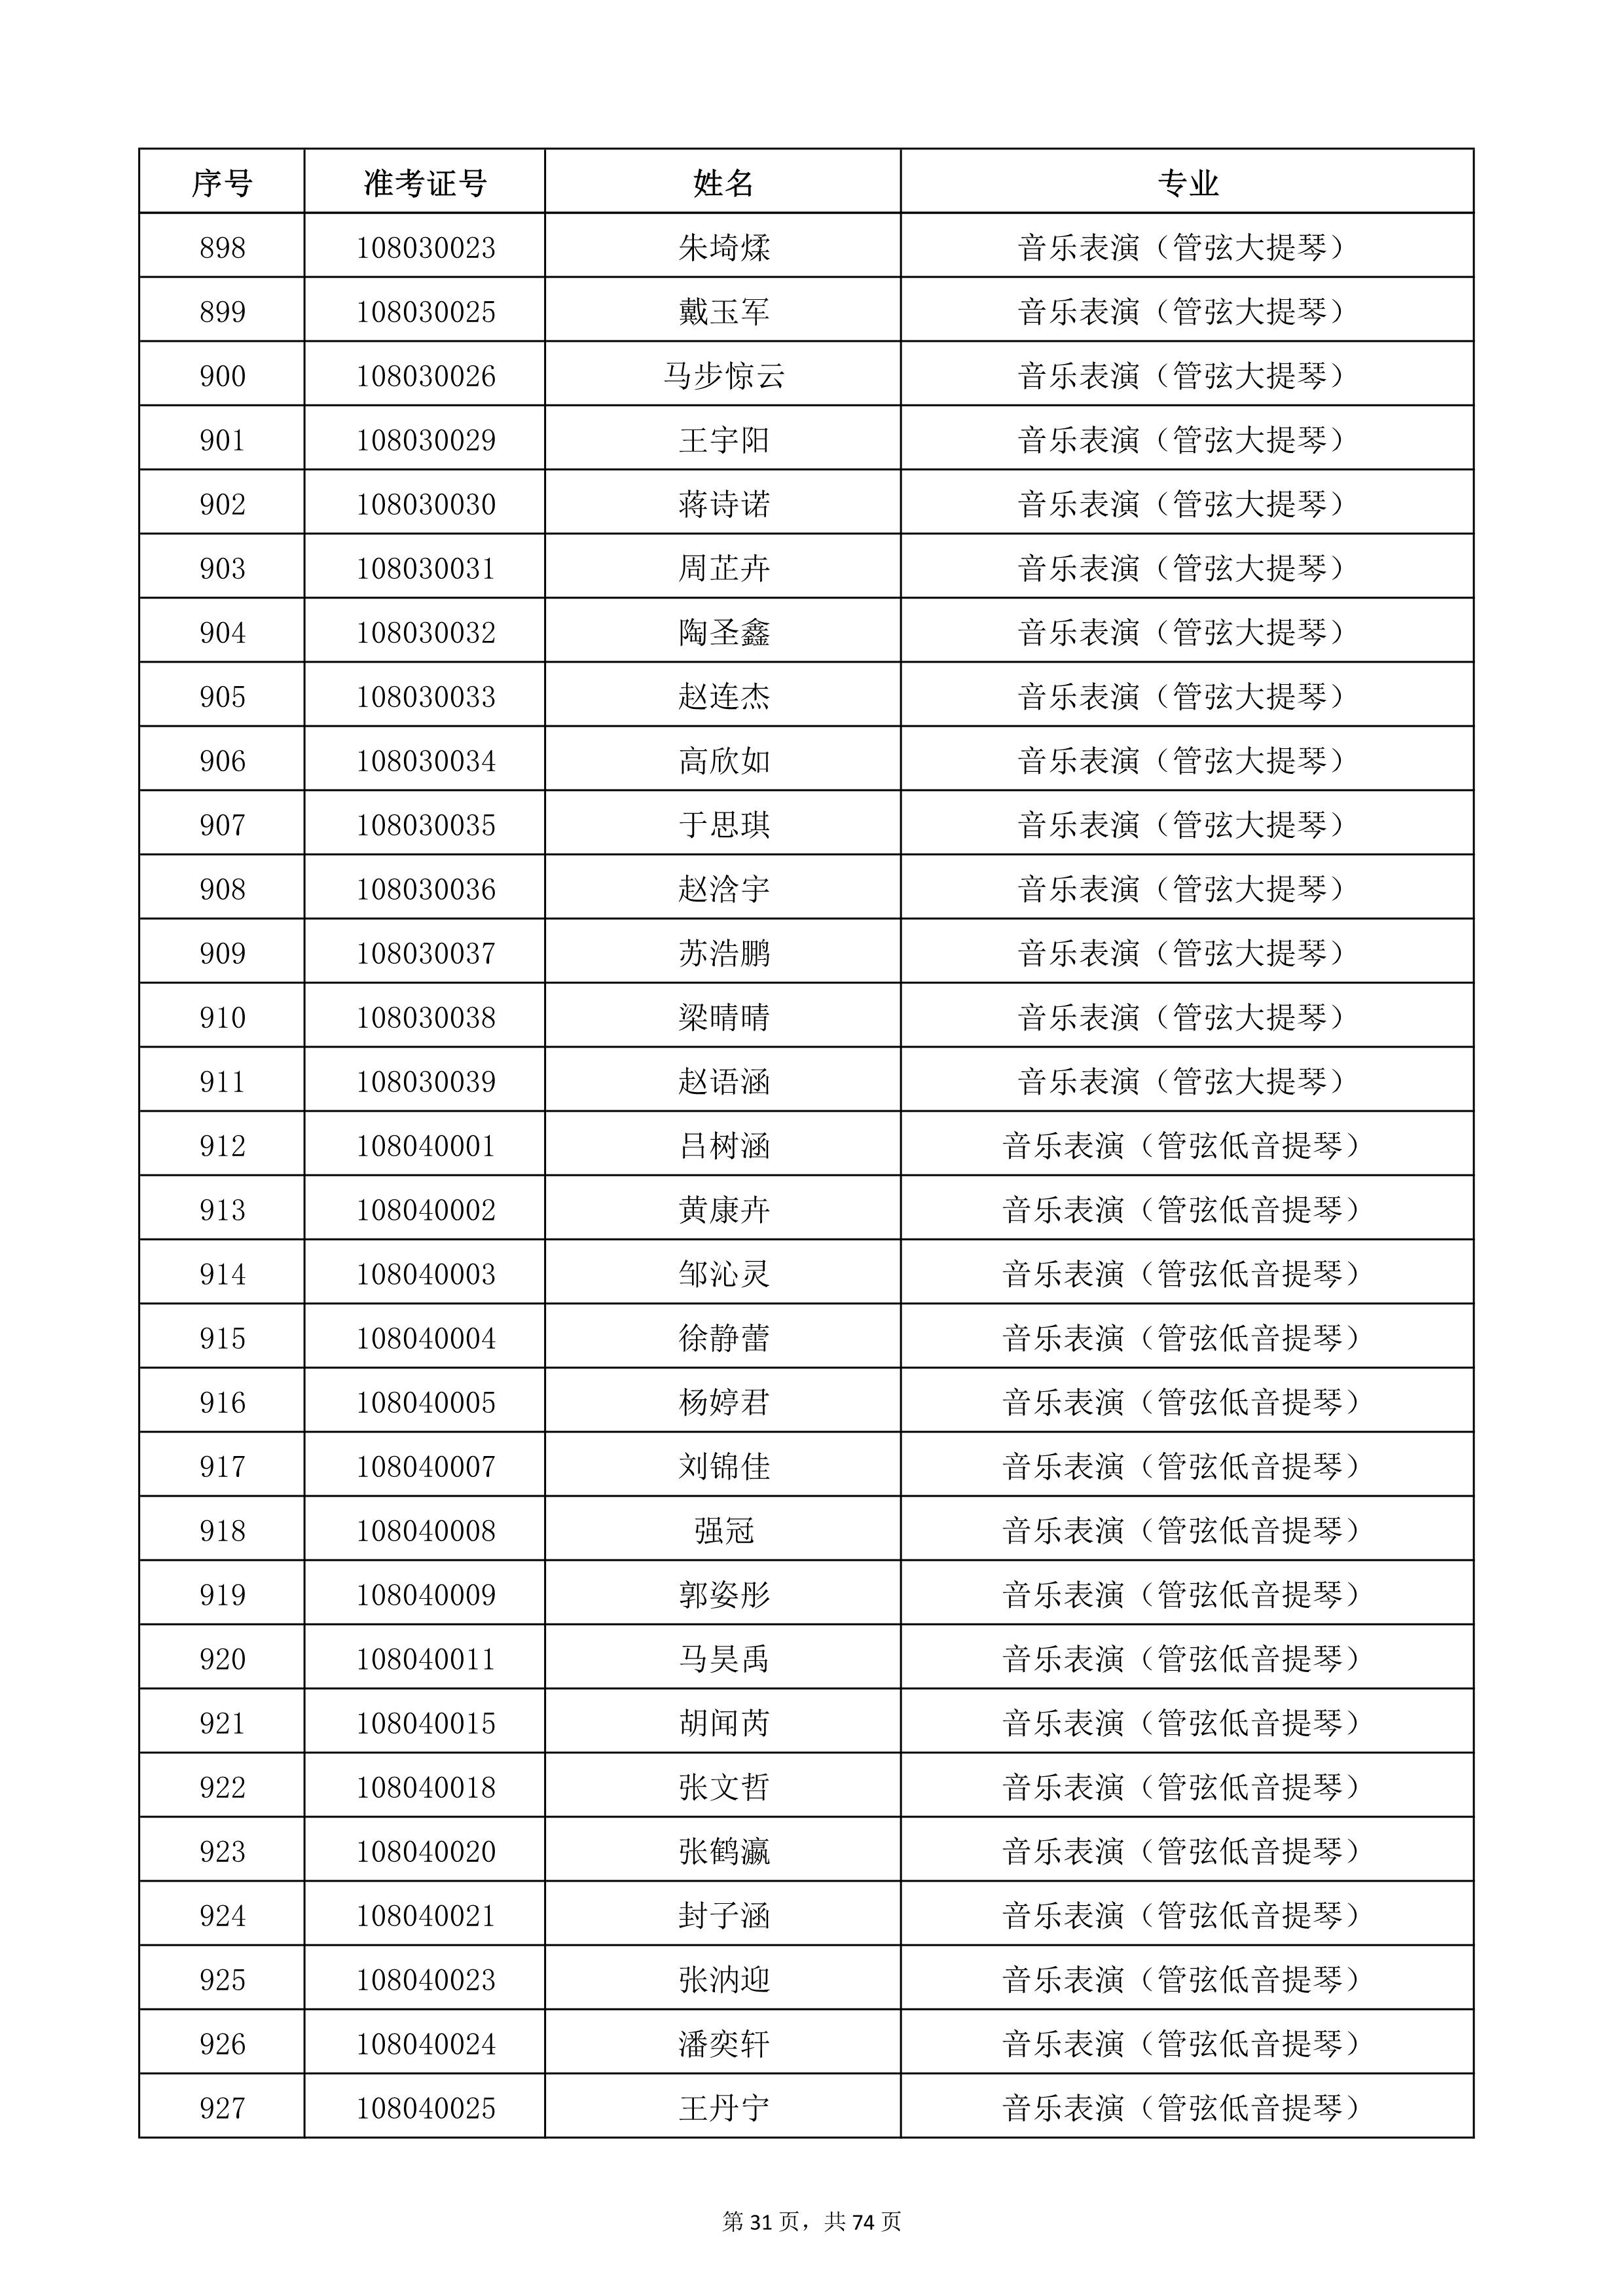 天津音乐学院2022年本科招生考试复试名单_31.jpg